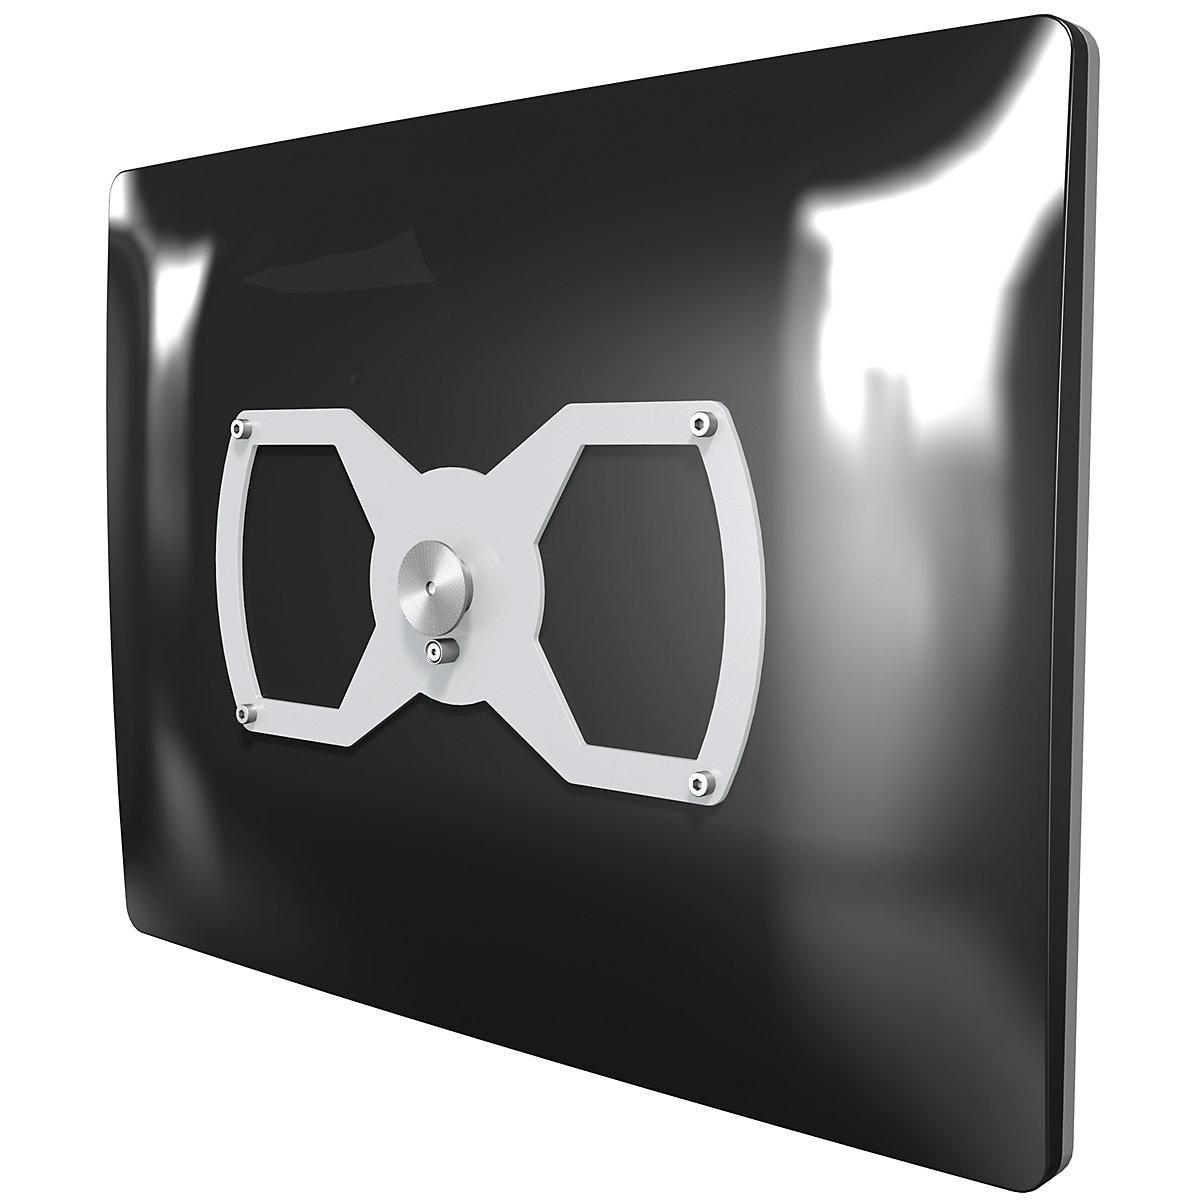 VIEWLITE adapter plate – Dataflex